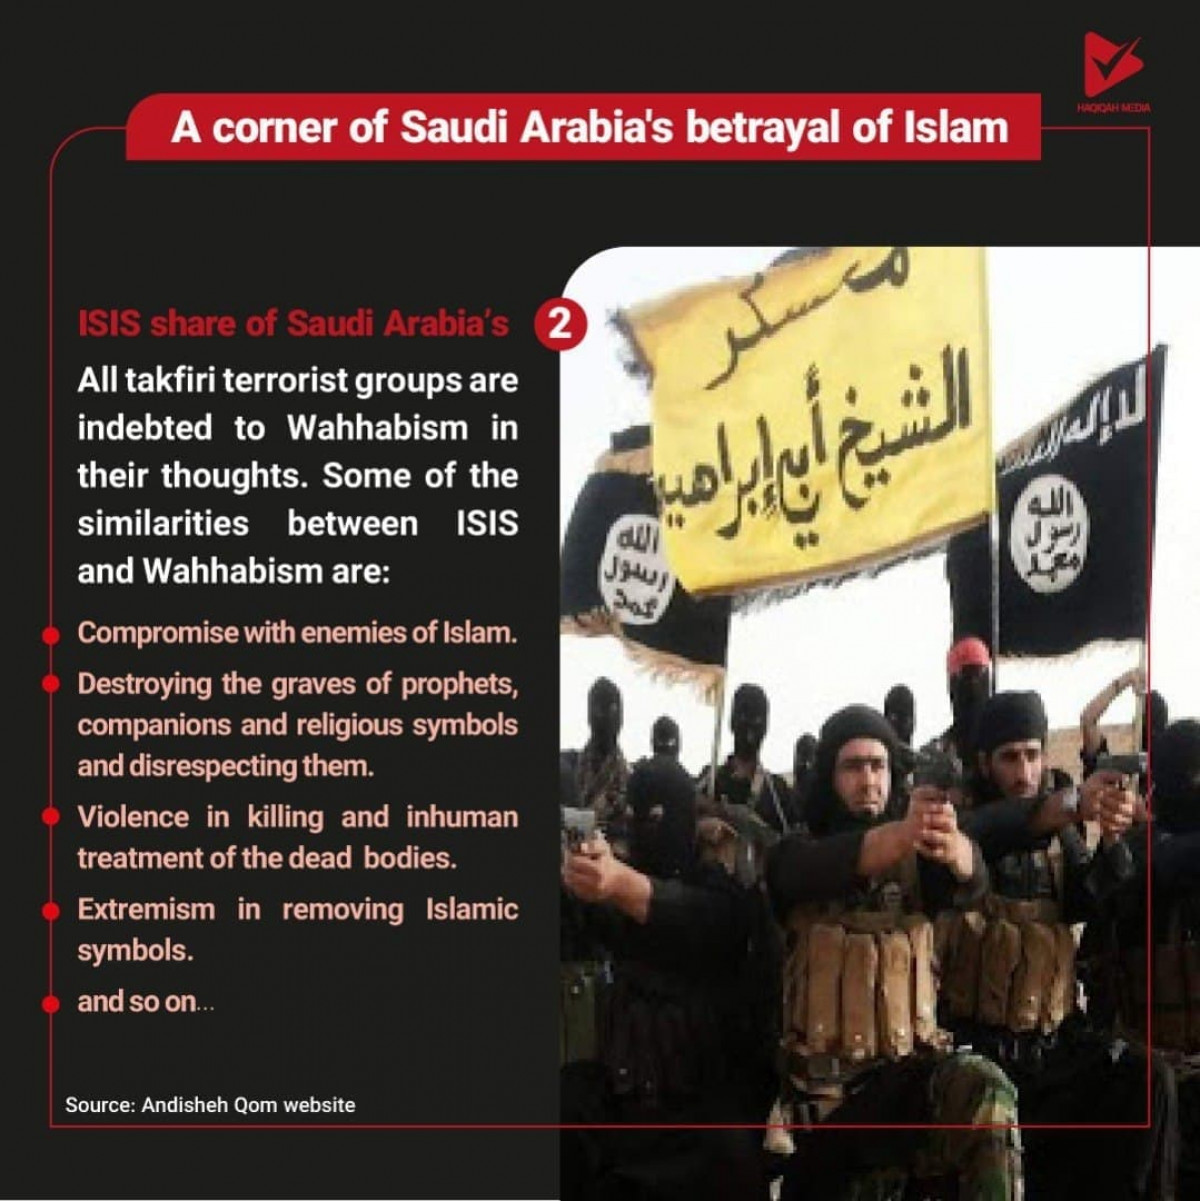 Saudi Arabia’s share of ISIS 2